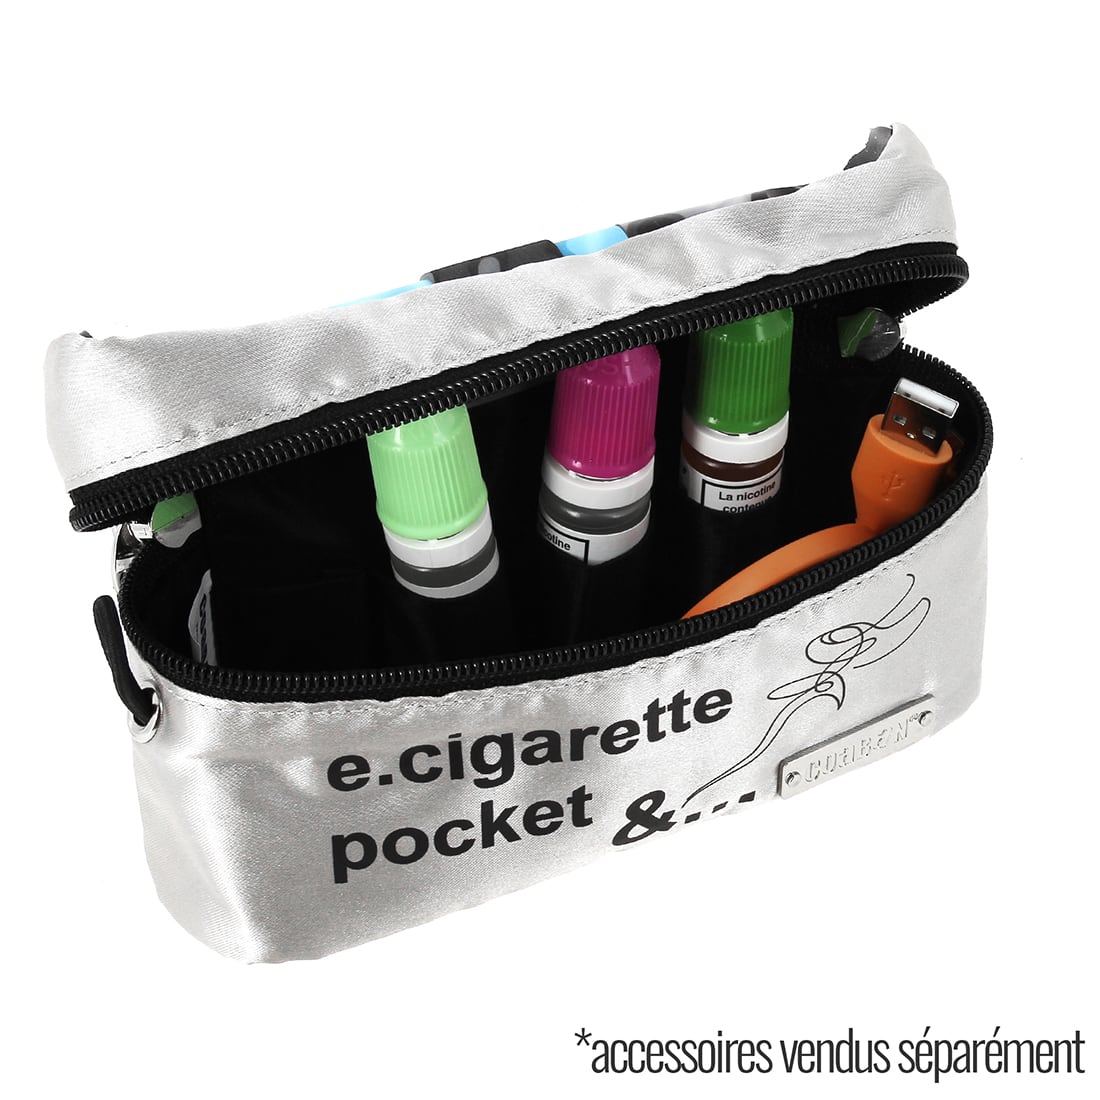 Trousse cigarette electronique Coaban - 20,00€